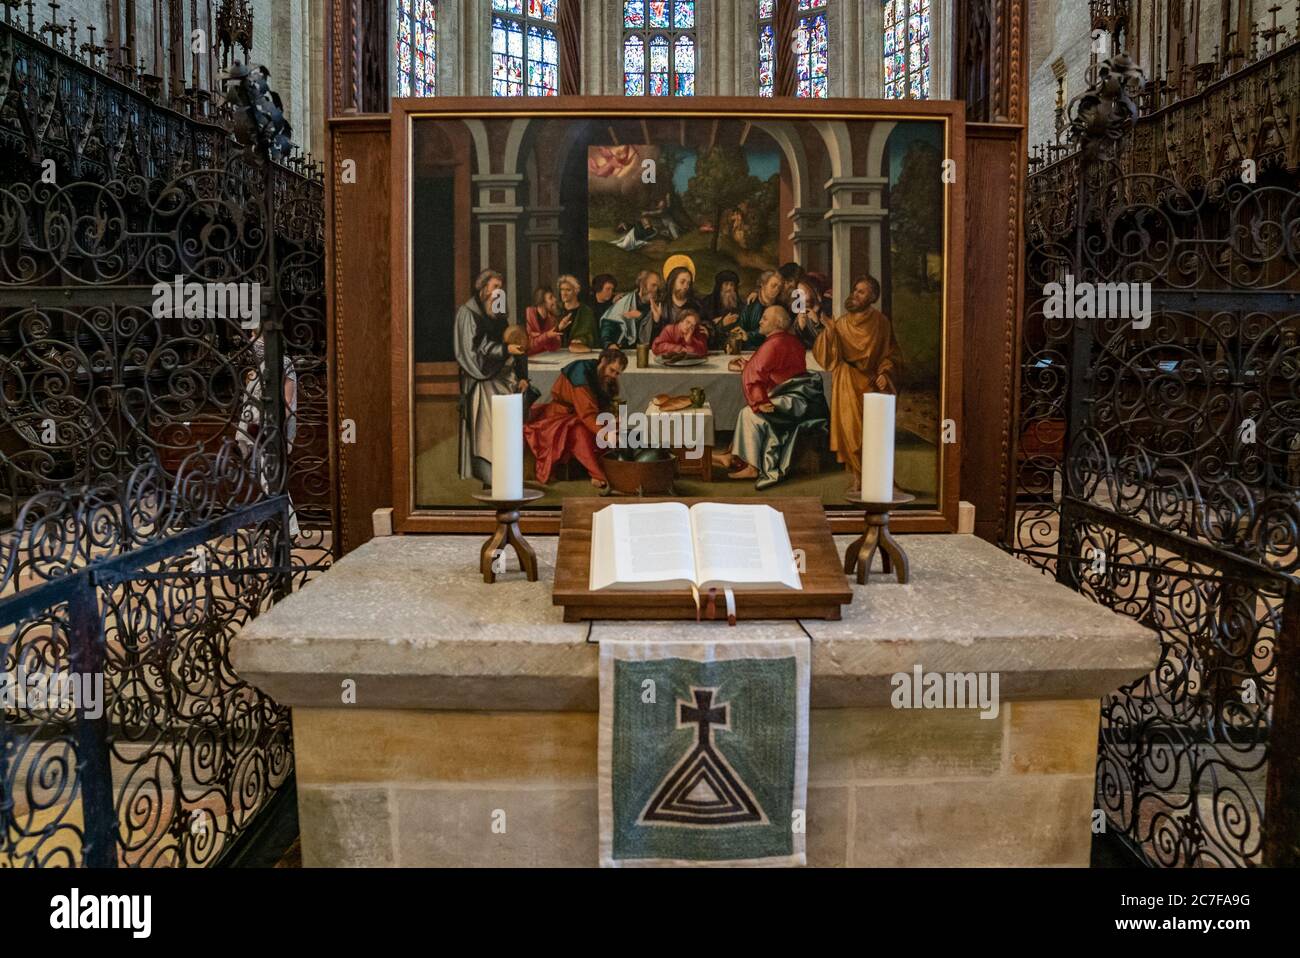 Ulm, BW / Germania - 14 luglio 2020: Vista dell'altare e della Bibbia nella cattedrale di Ulm Foto Stock